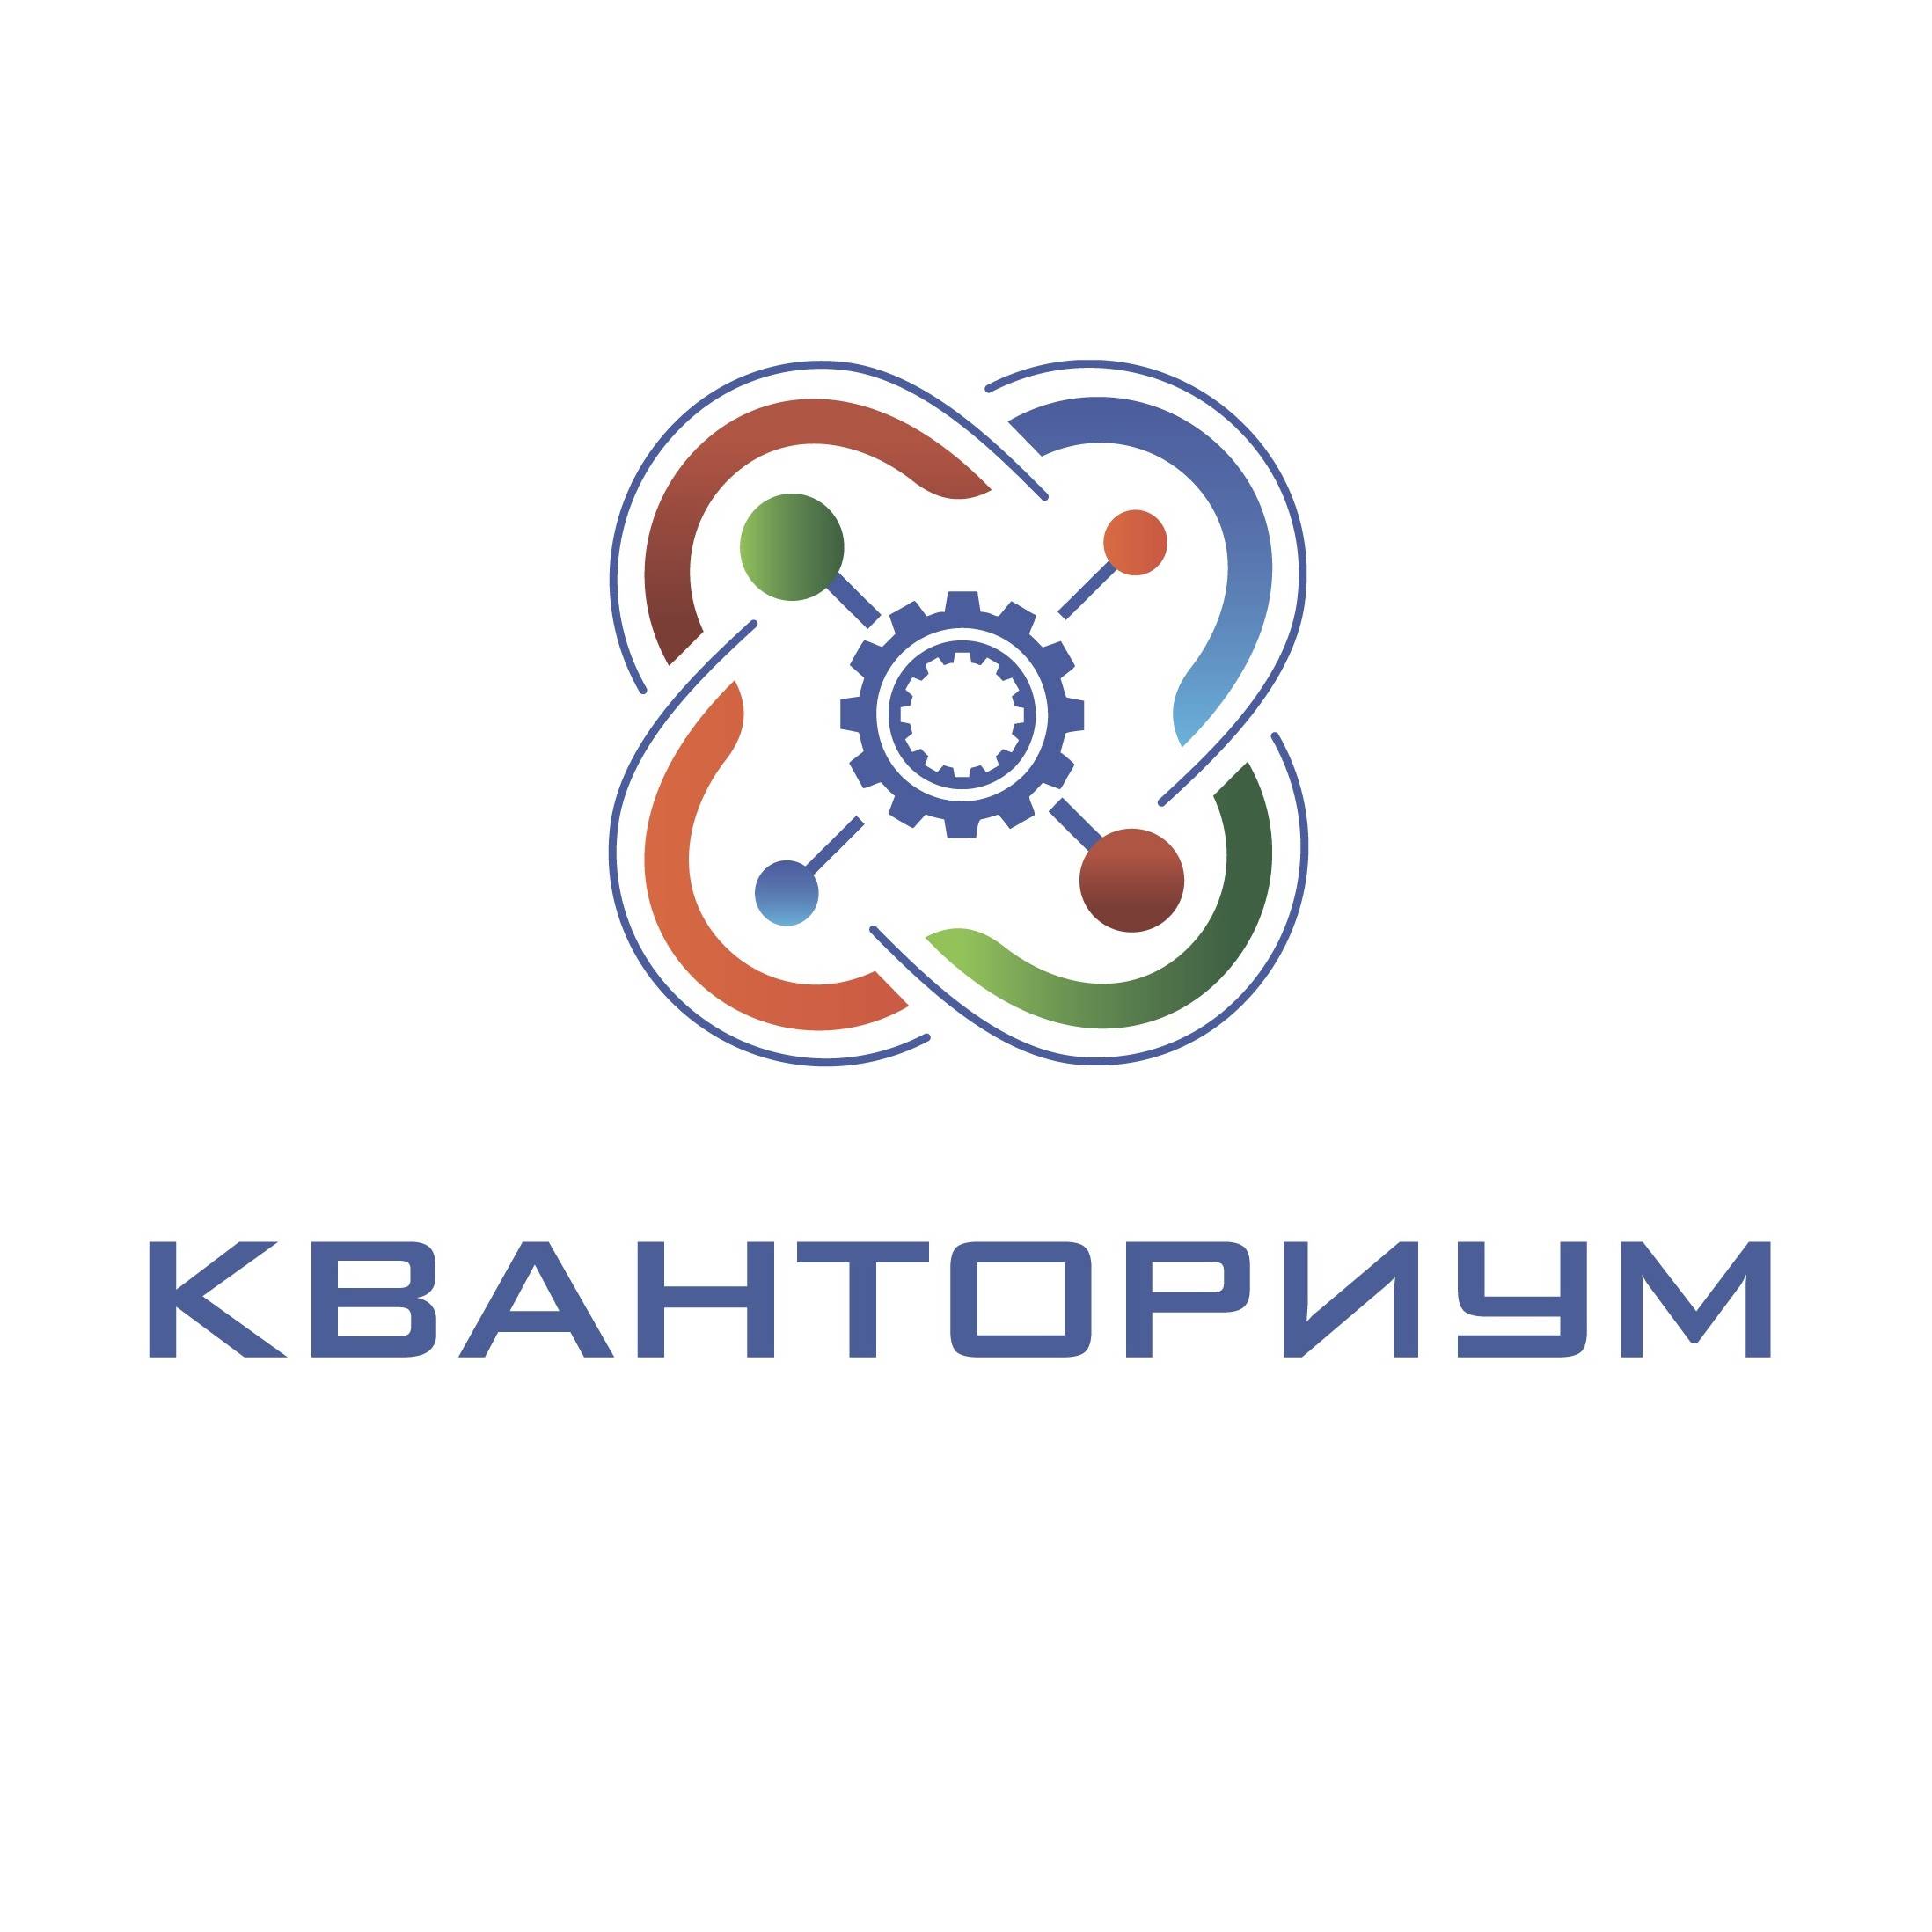 Кванториум Башкортостана лого